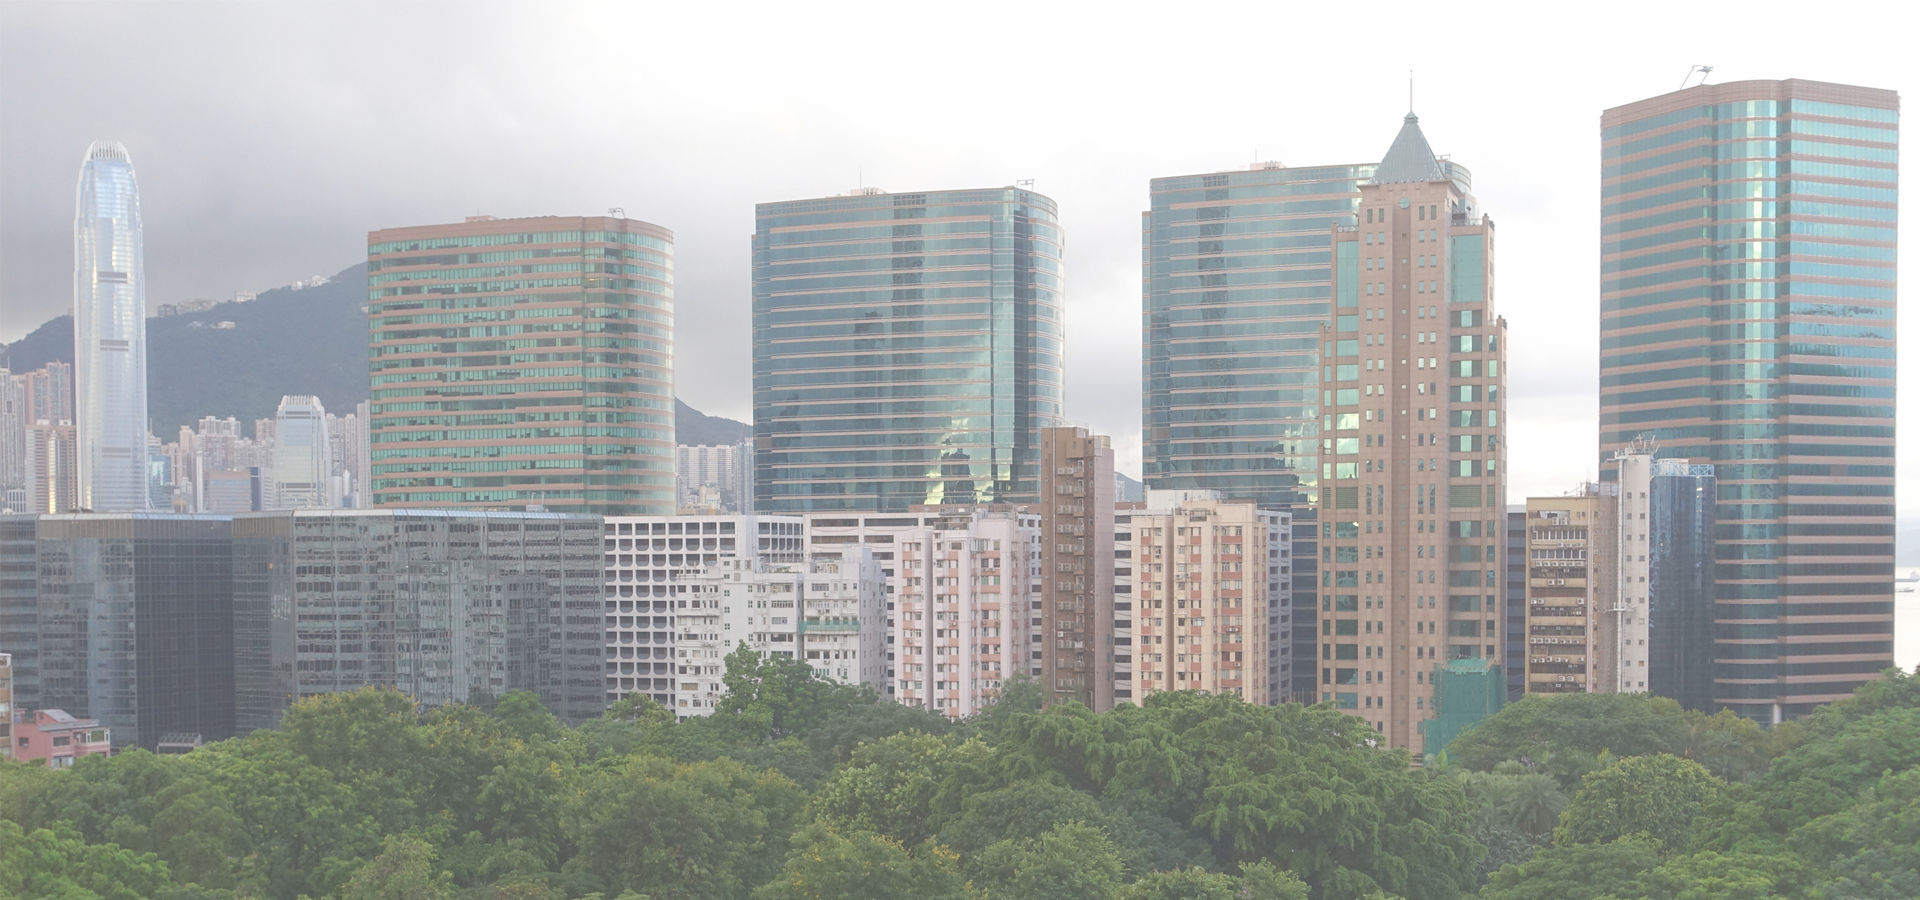 <b>Tsim Sha Tsui, Kowloon City District, Kowloon, Hong Kong</b>